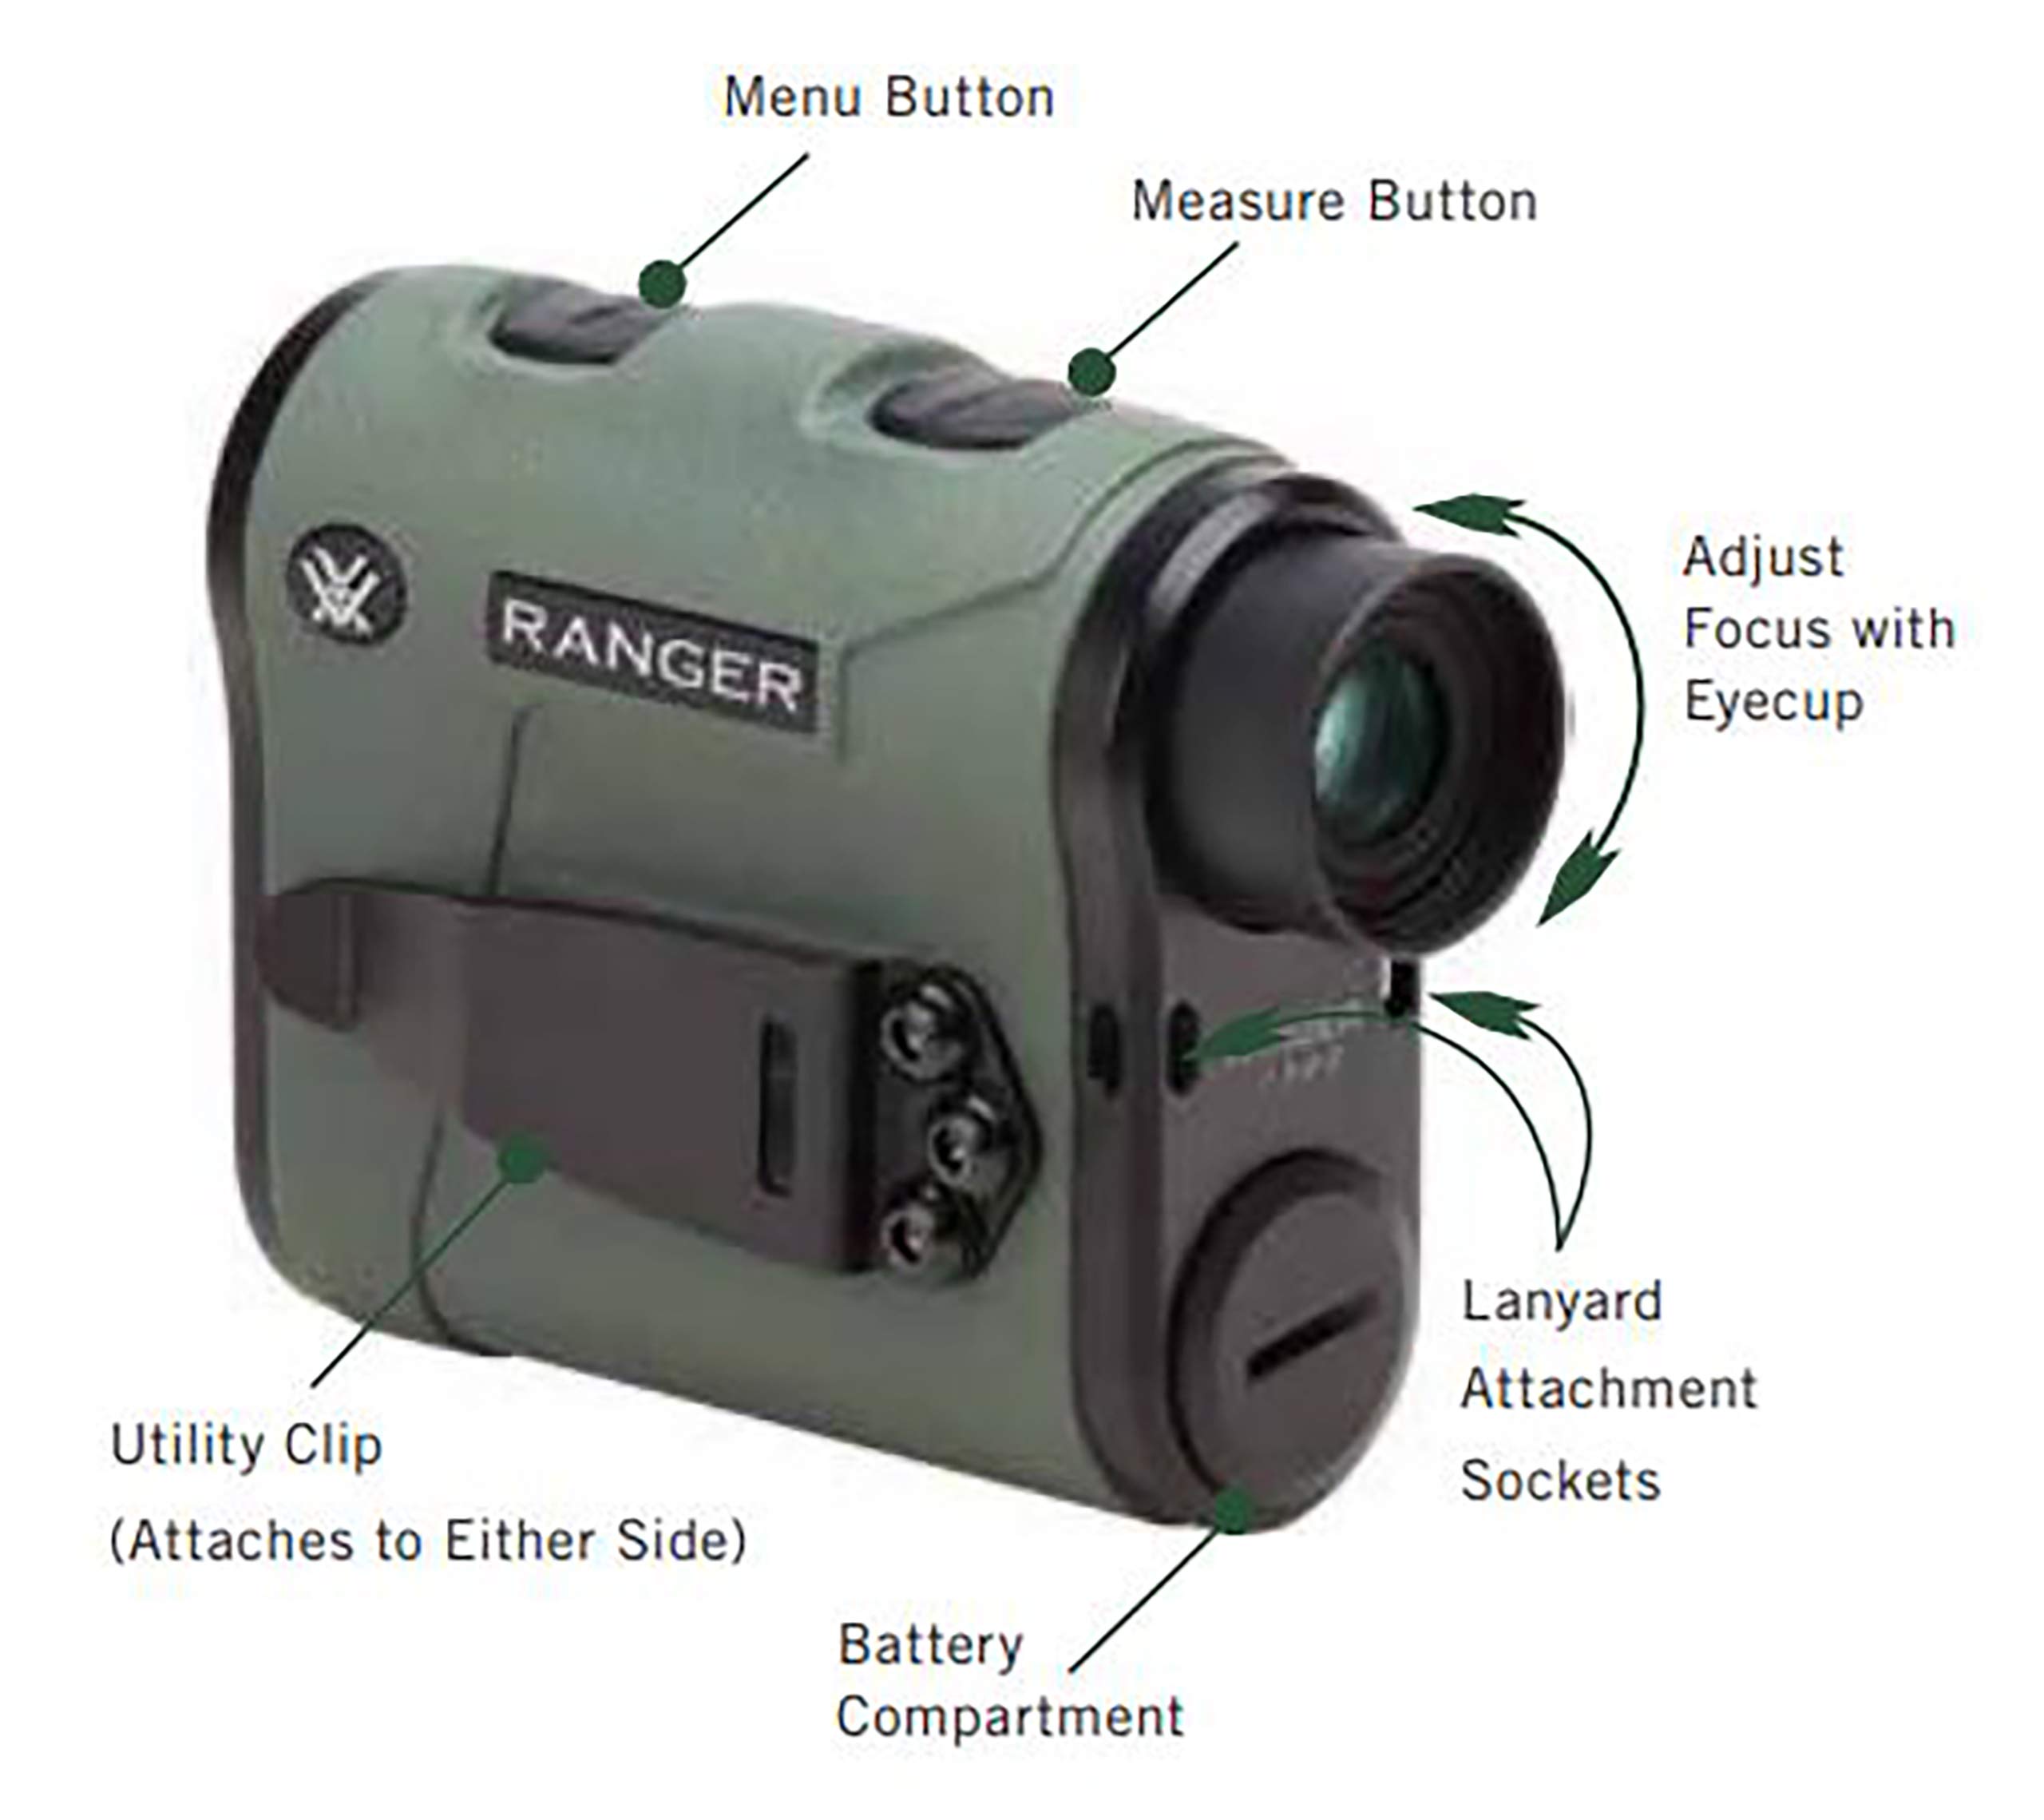 Vortex Optics Ranger Laser Rangefinders